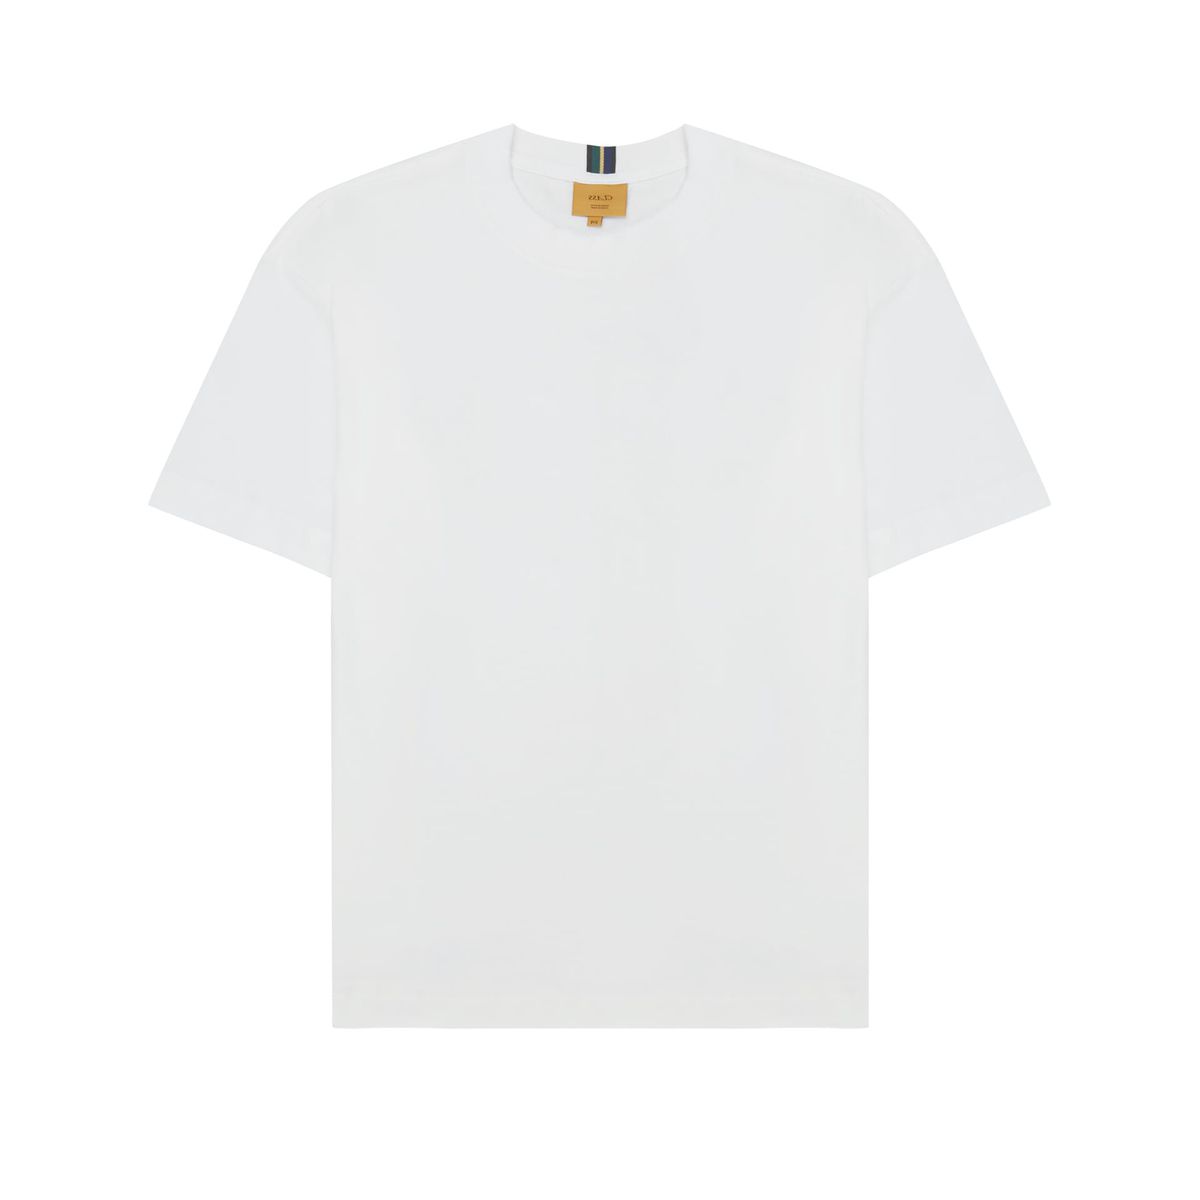 Camiseta Class Orelhão Off White